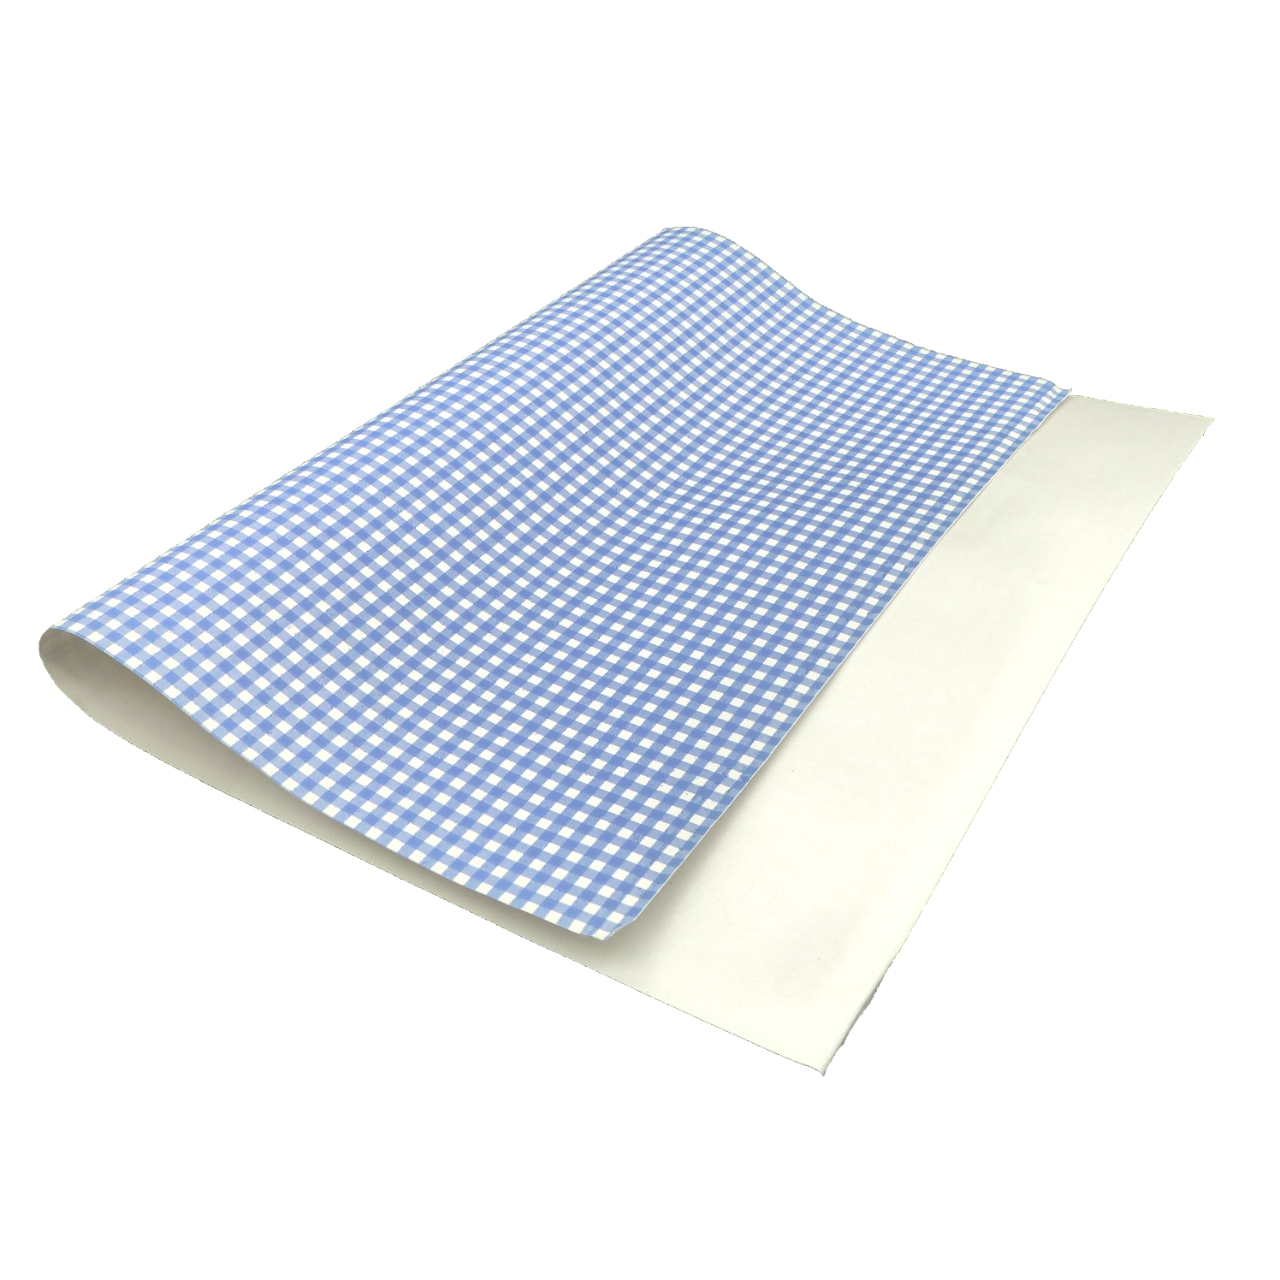 Frischpack 1/4, 50x37.5 cm, Karo blau-weiß, Typ 50, Papier & Folie, 10 kg